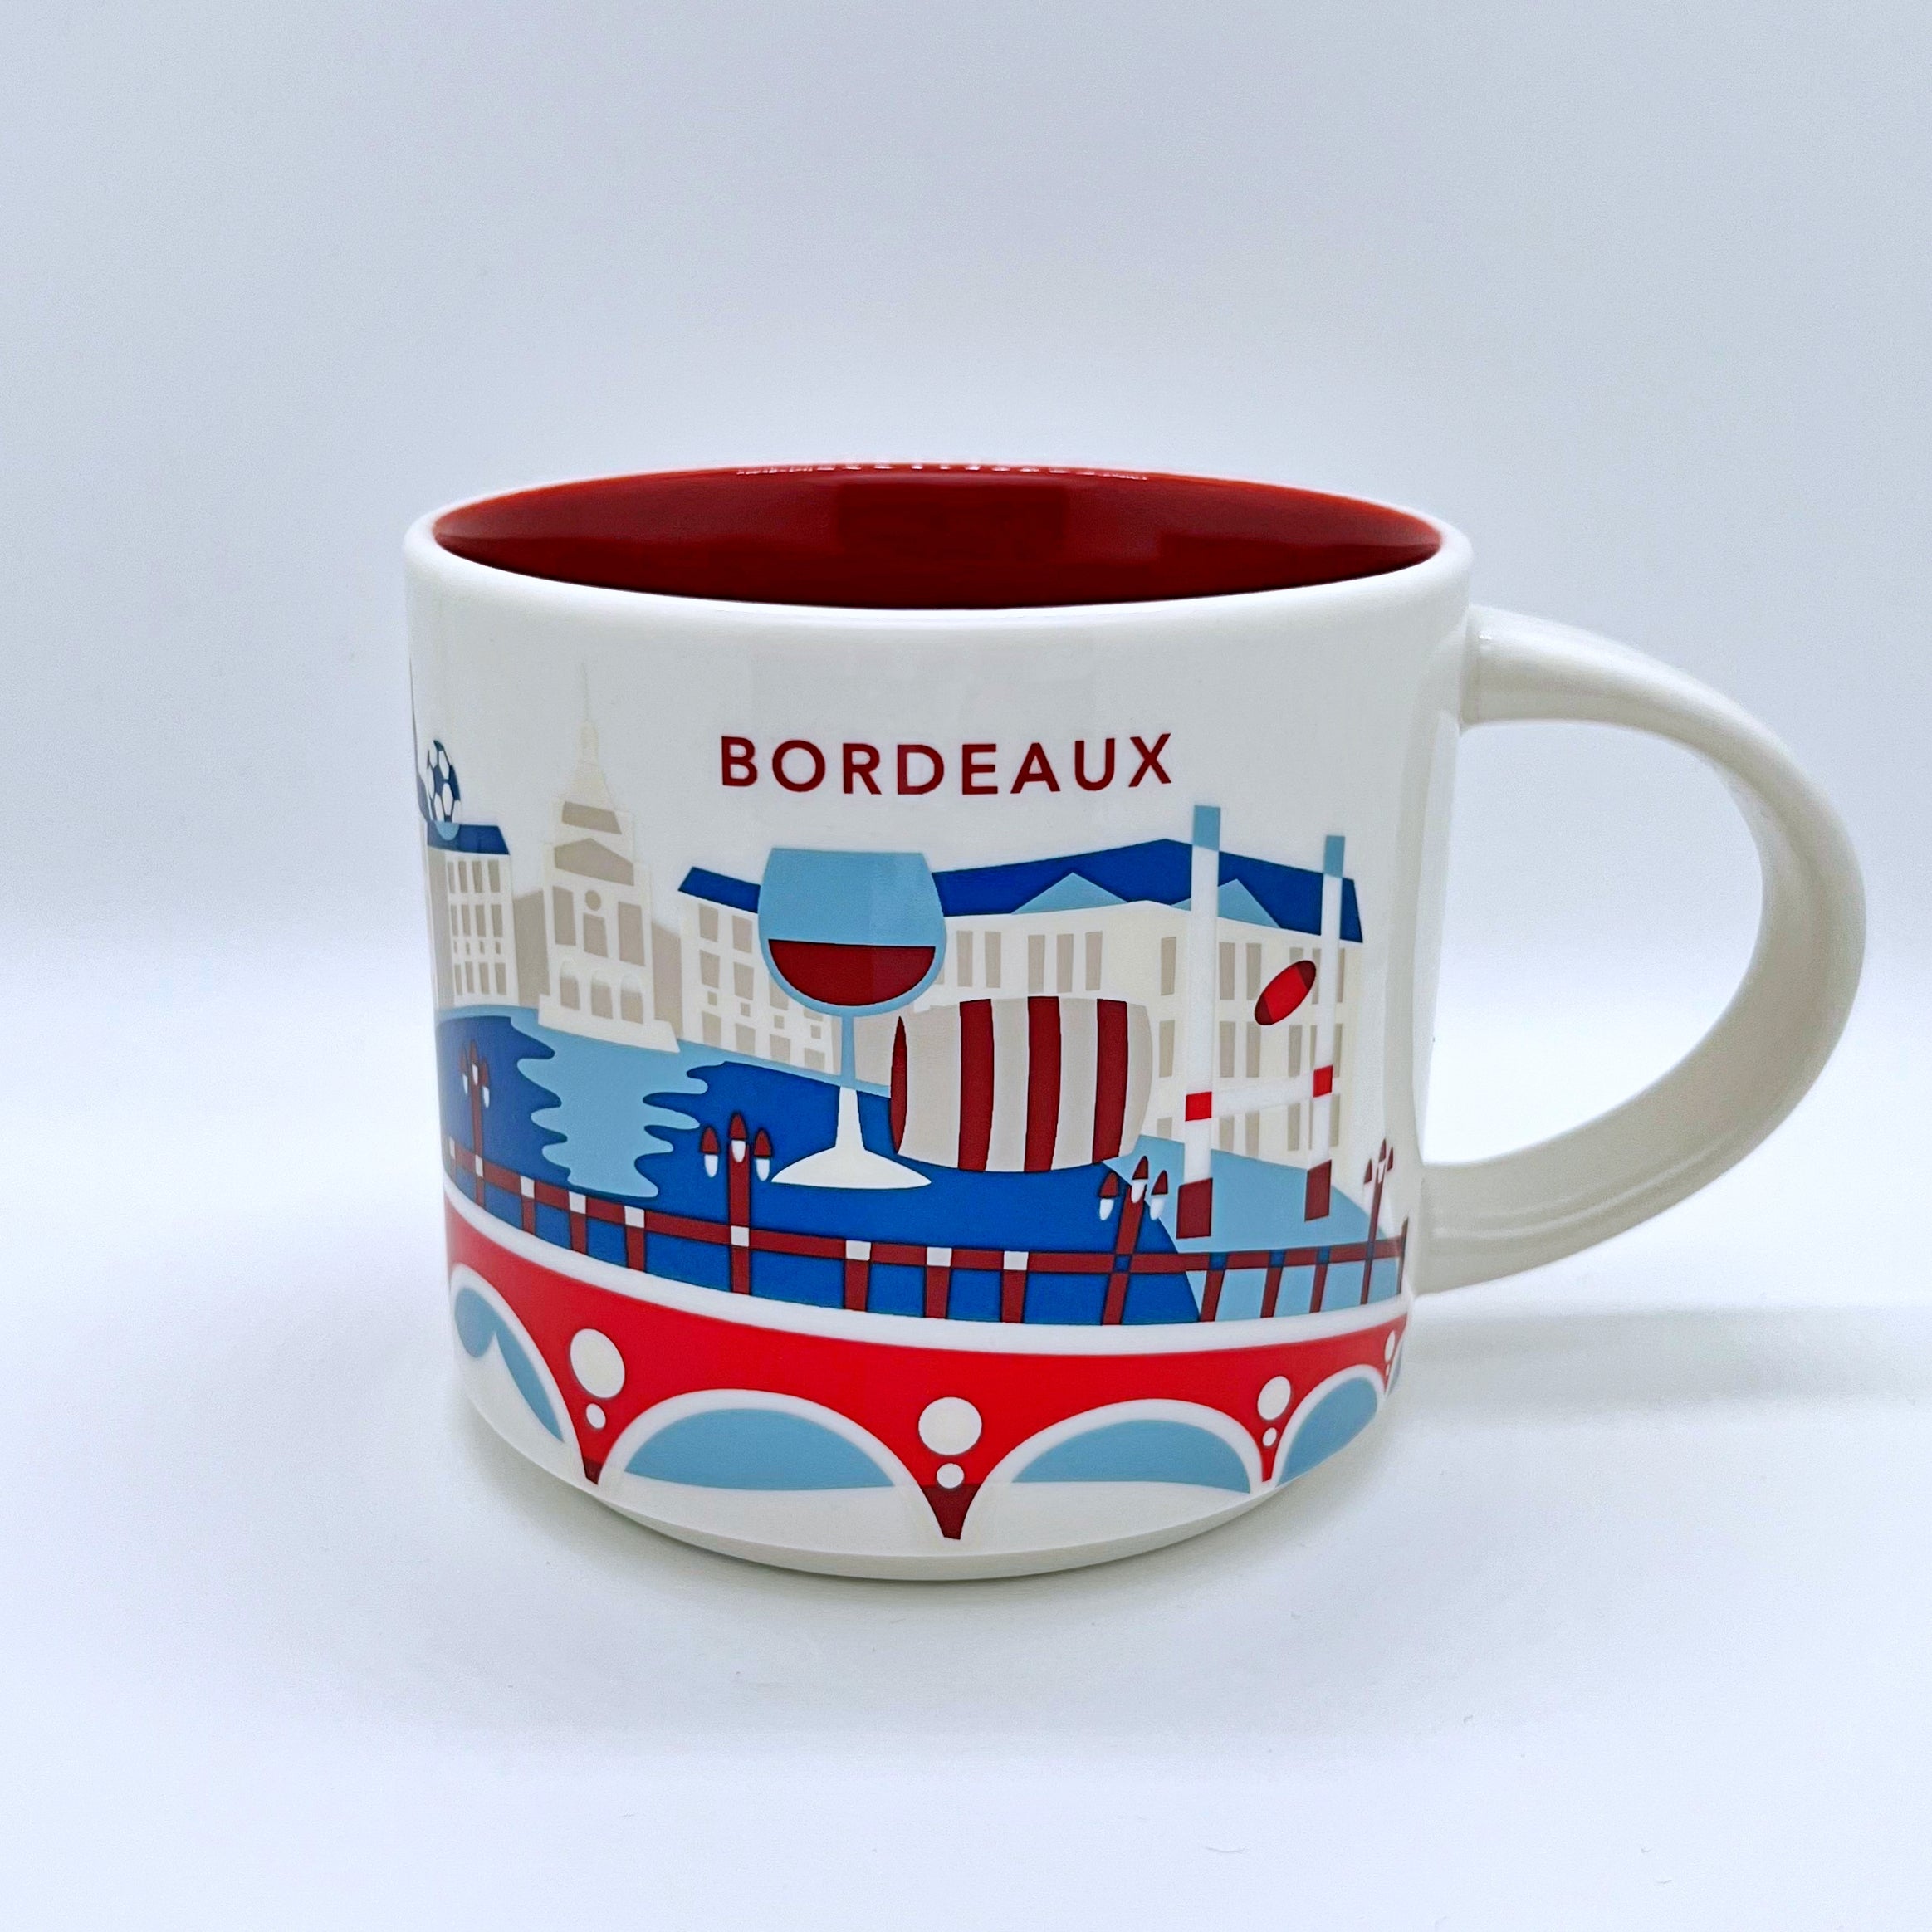 Kaffee Tee und Cappuccino Tasse von Starbucks mit gemalten Bildern aus der Stadt Bordeaux